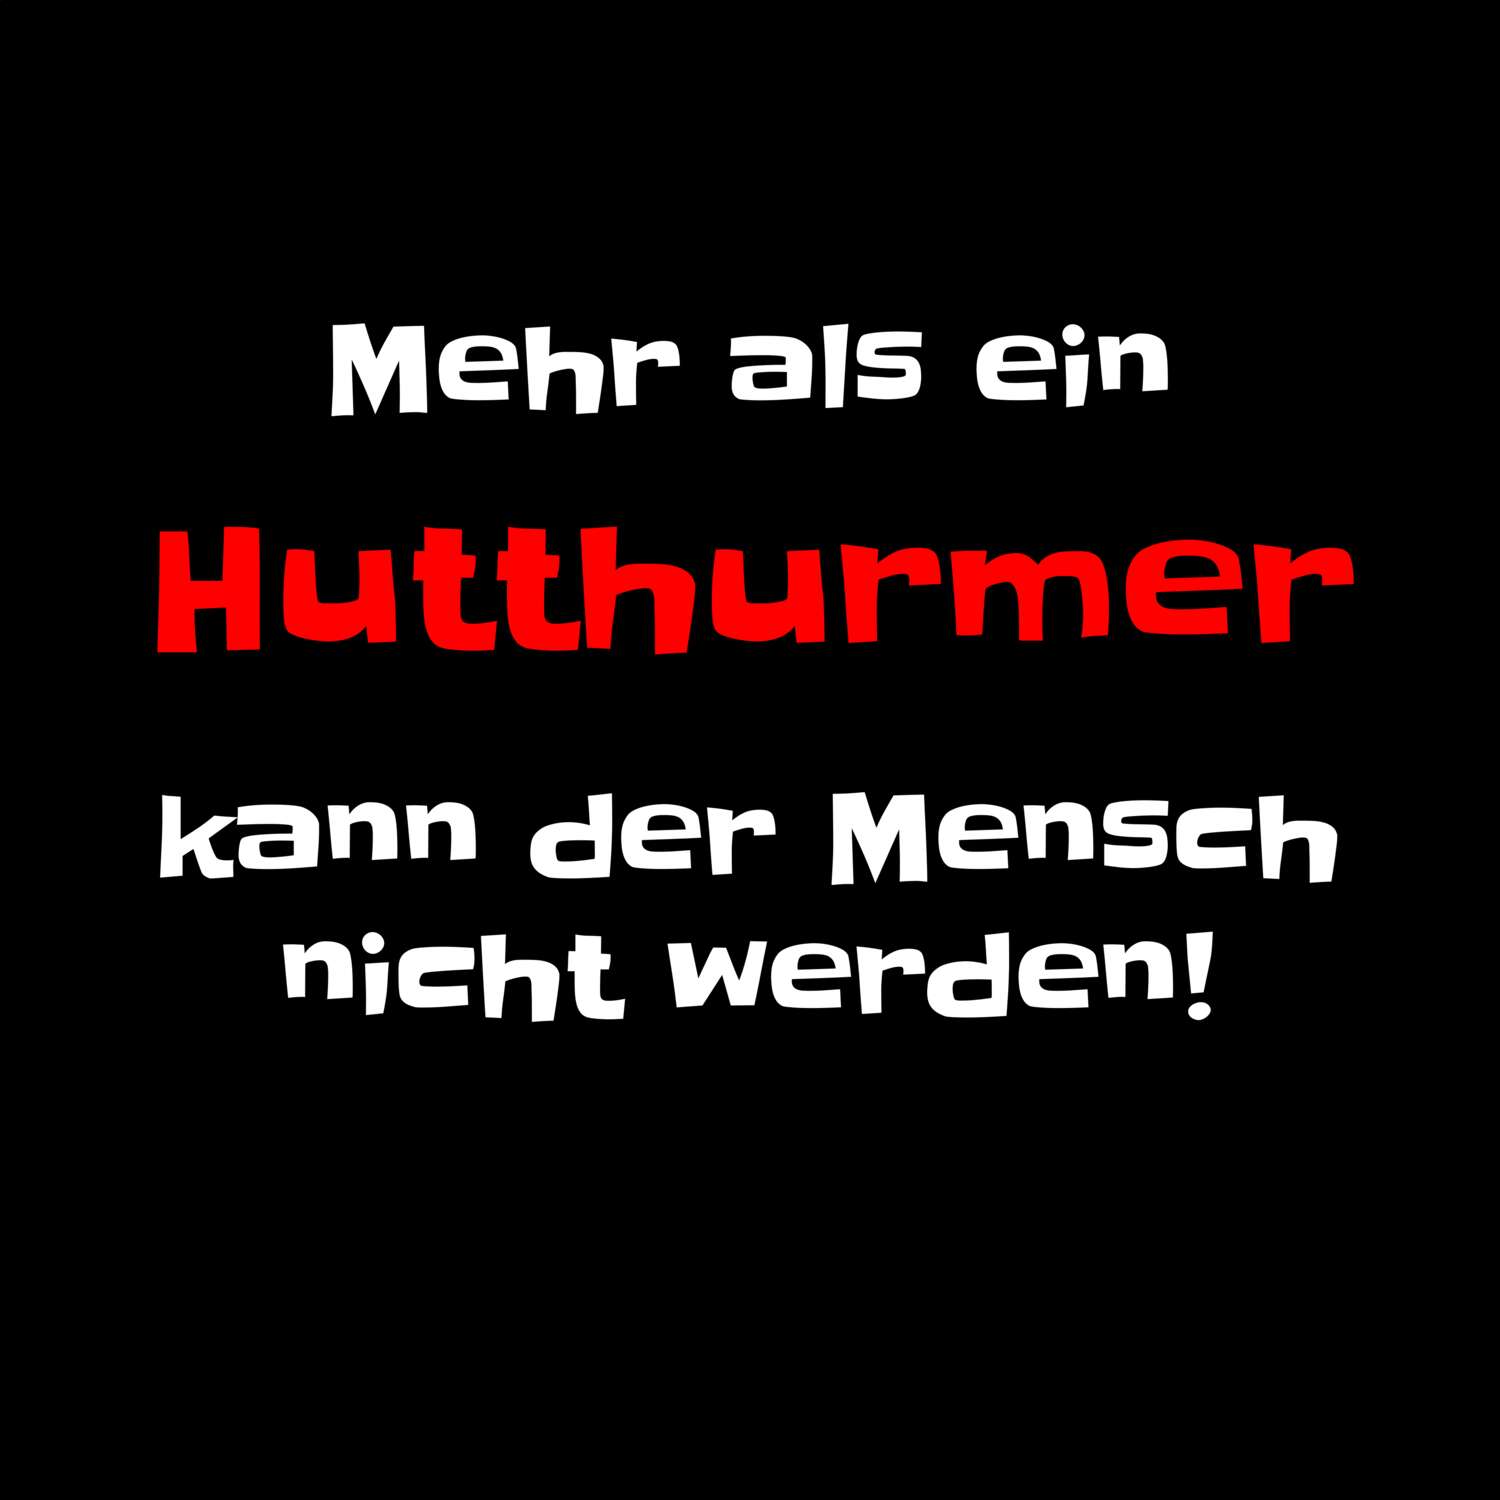 Hutthurm T-Shirt »Mehr als ein«